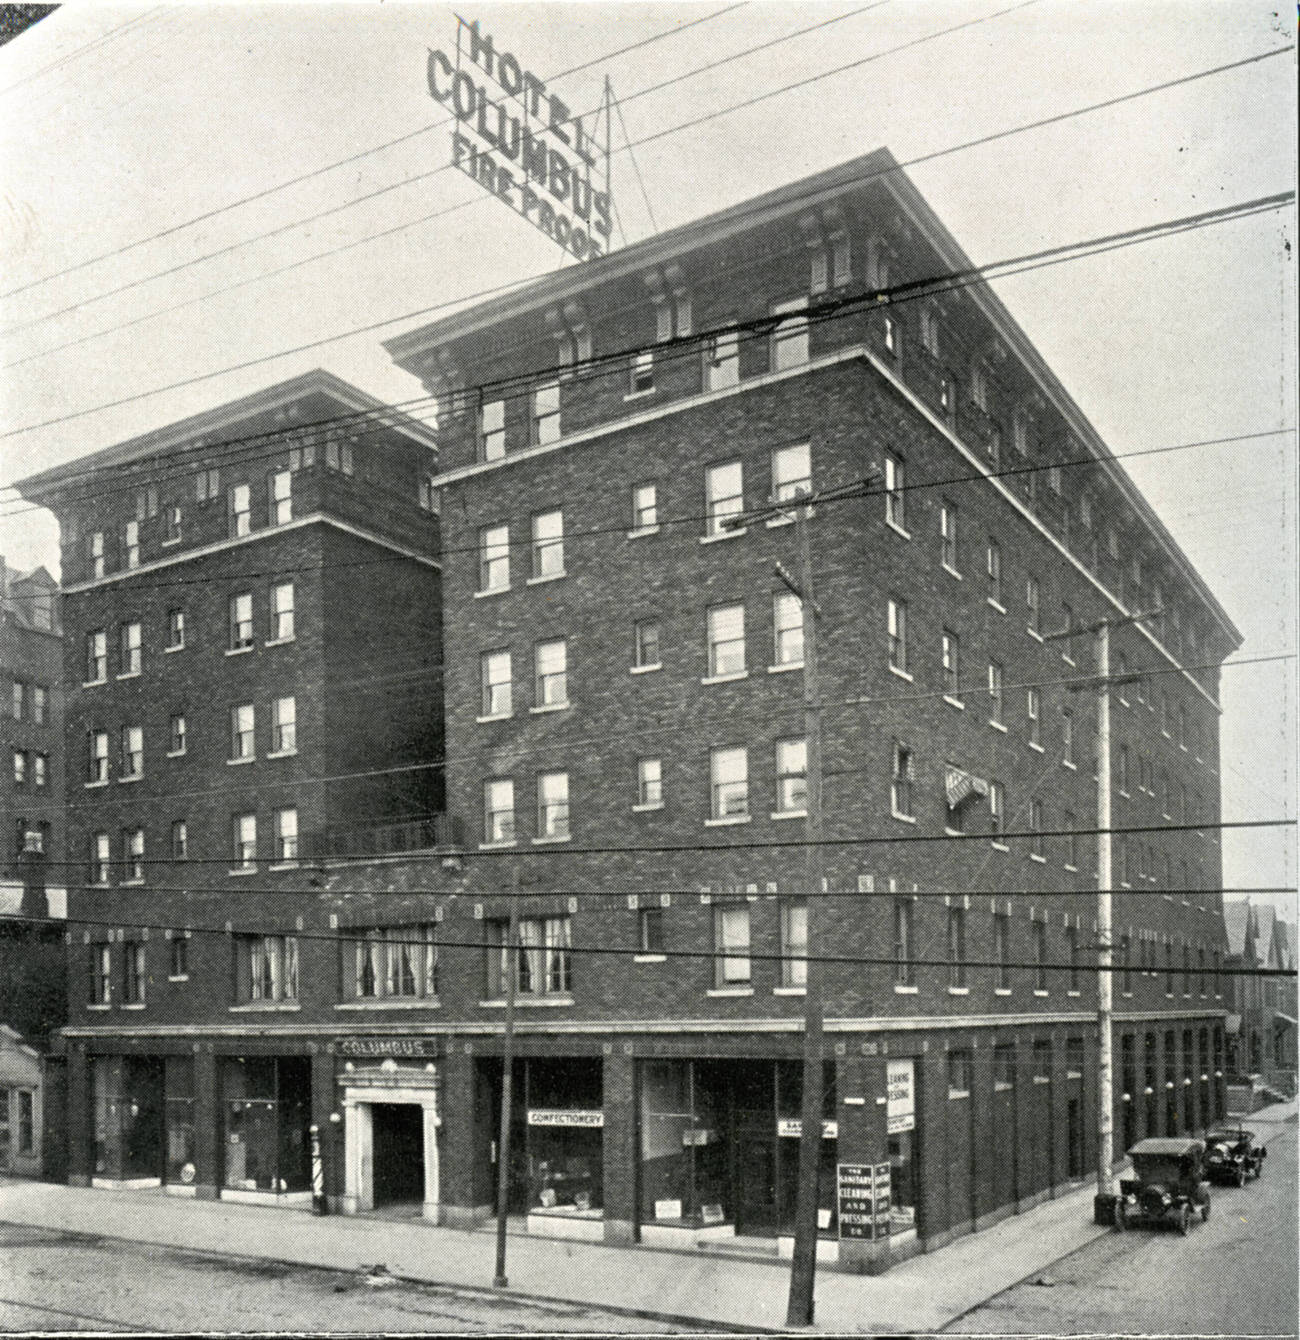 Hotel Columbus, 1940s